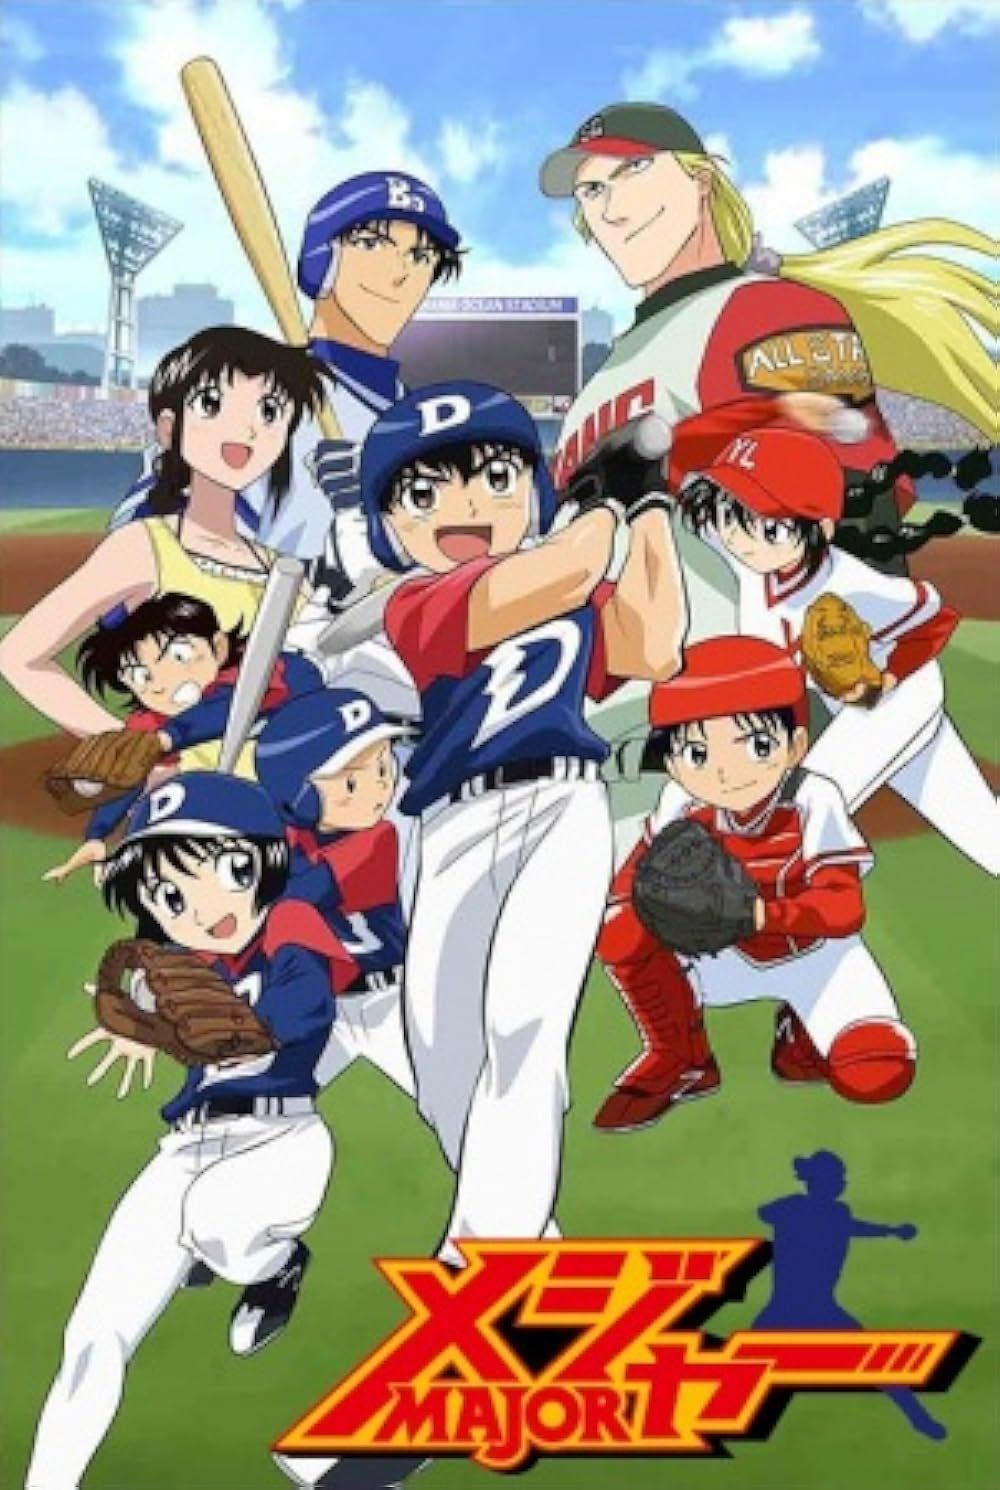 Major anime poster